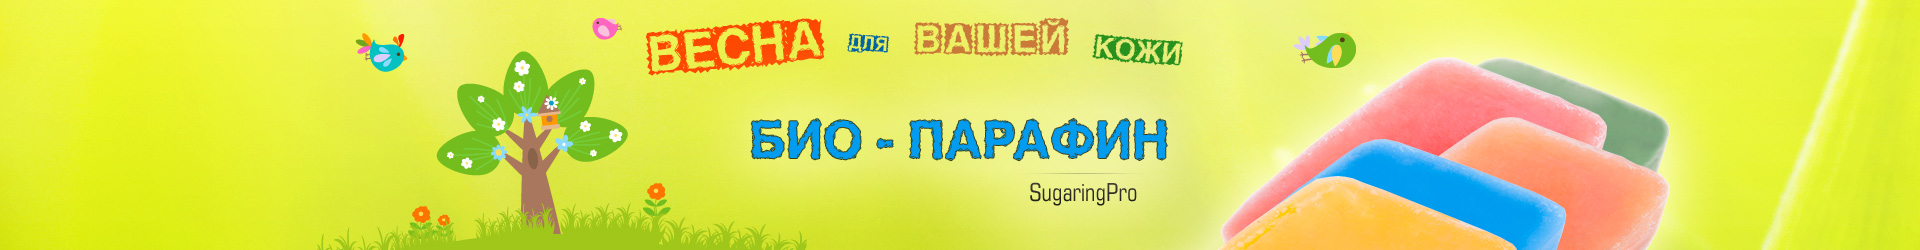 Баннеры для EpilShop.ru